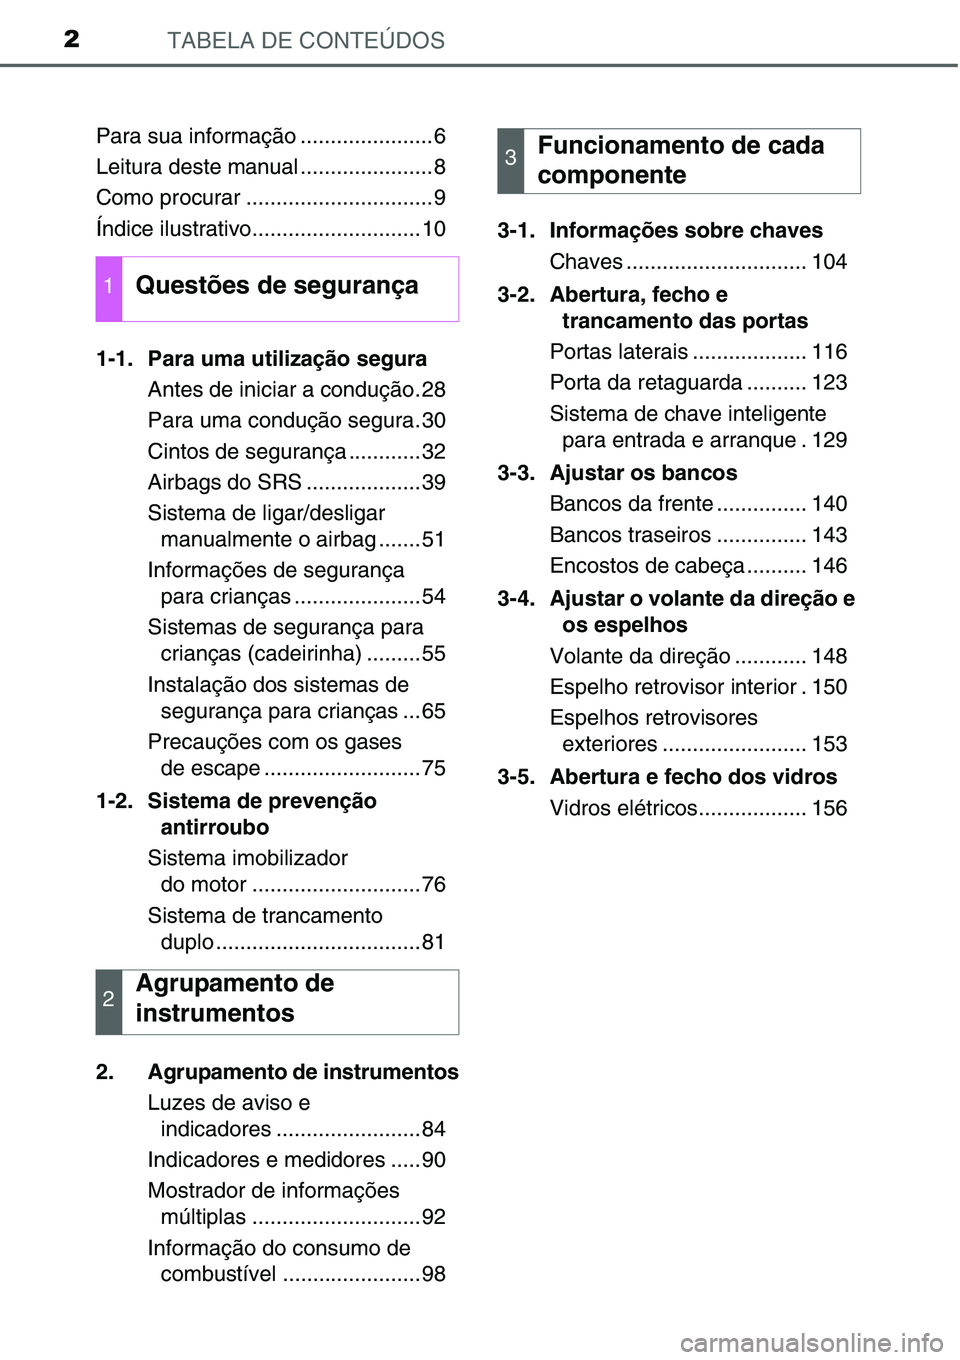 TOYOTA YARIS HATCHBACK 2015  Manual de utilização (in Portuguese) TABELA DE CONTEÚDOS2
Para sua informação ......................6
Leitura deste manual ......................8
Como procurar ...............................9
Índice ilustrativo.....................